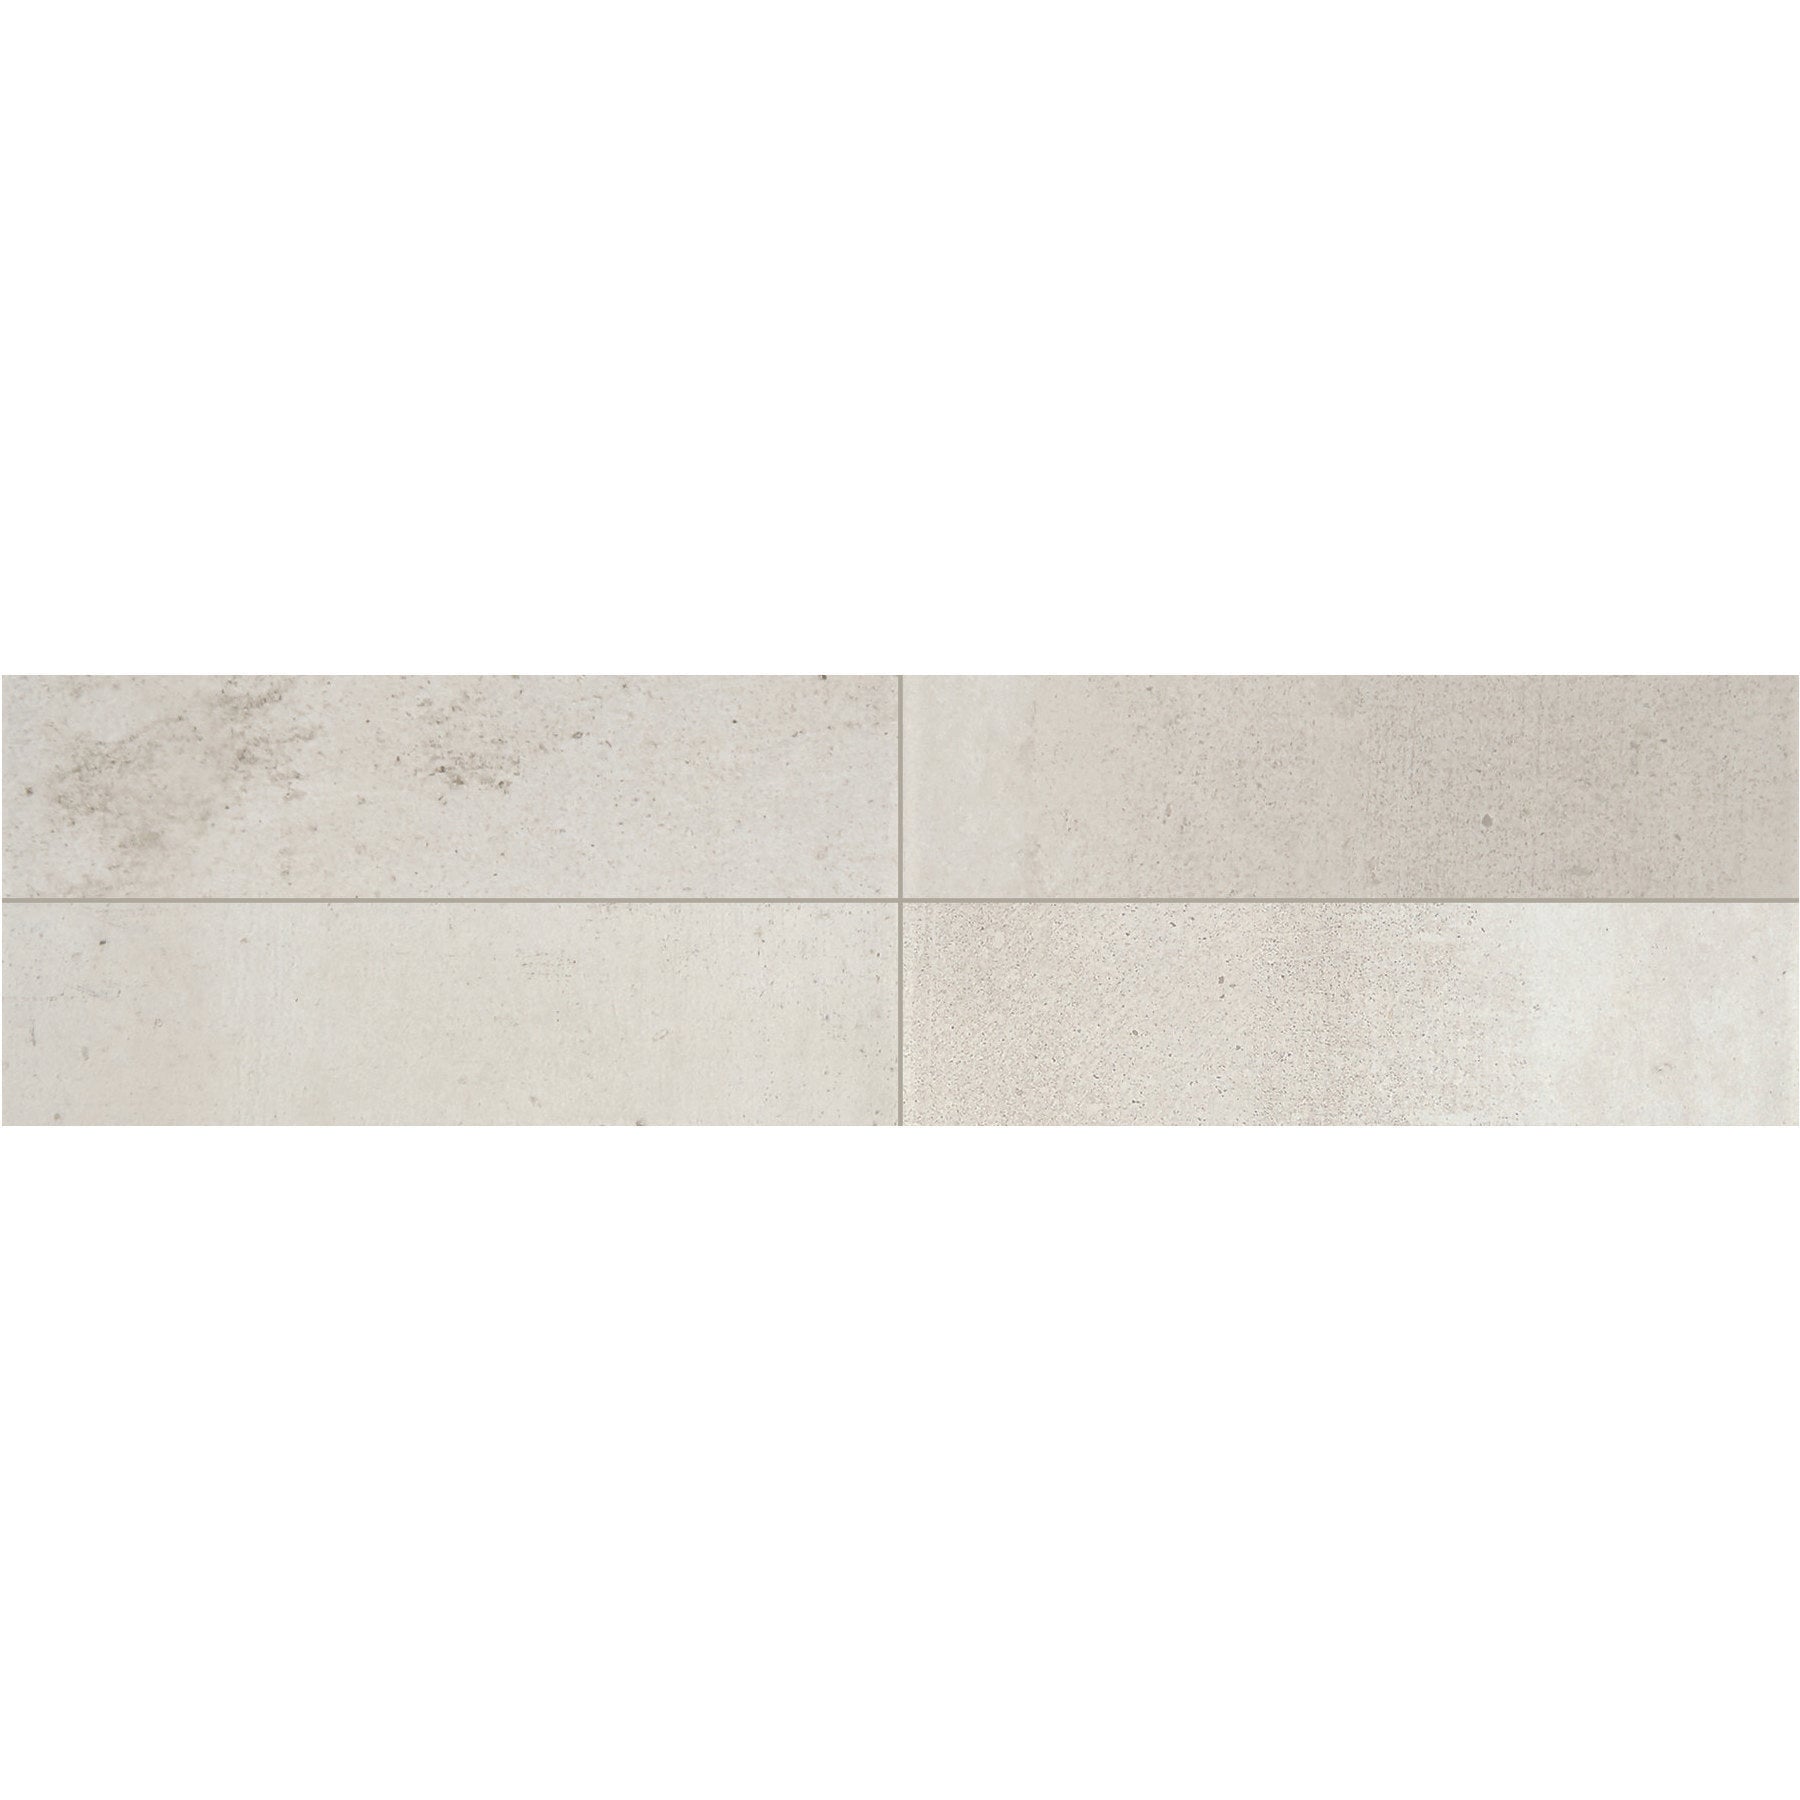 Daltile - Modern Hearth - 3 in. x 12 in. Glazed Ceramic Wall Tile - White Ash